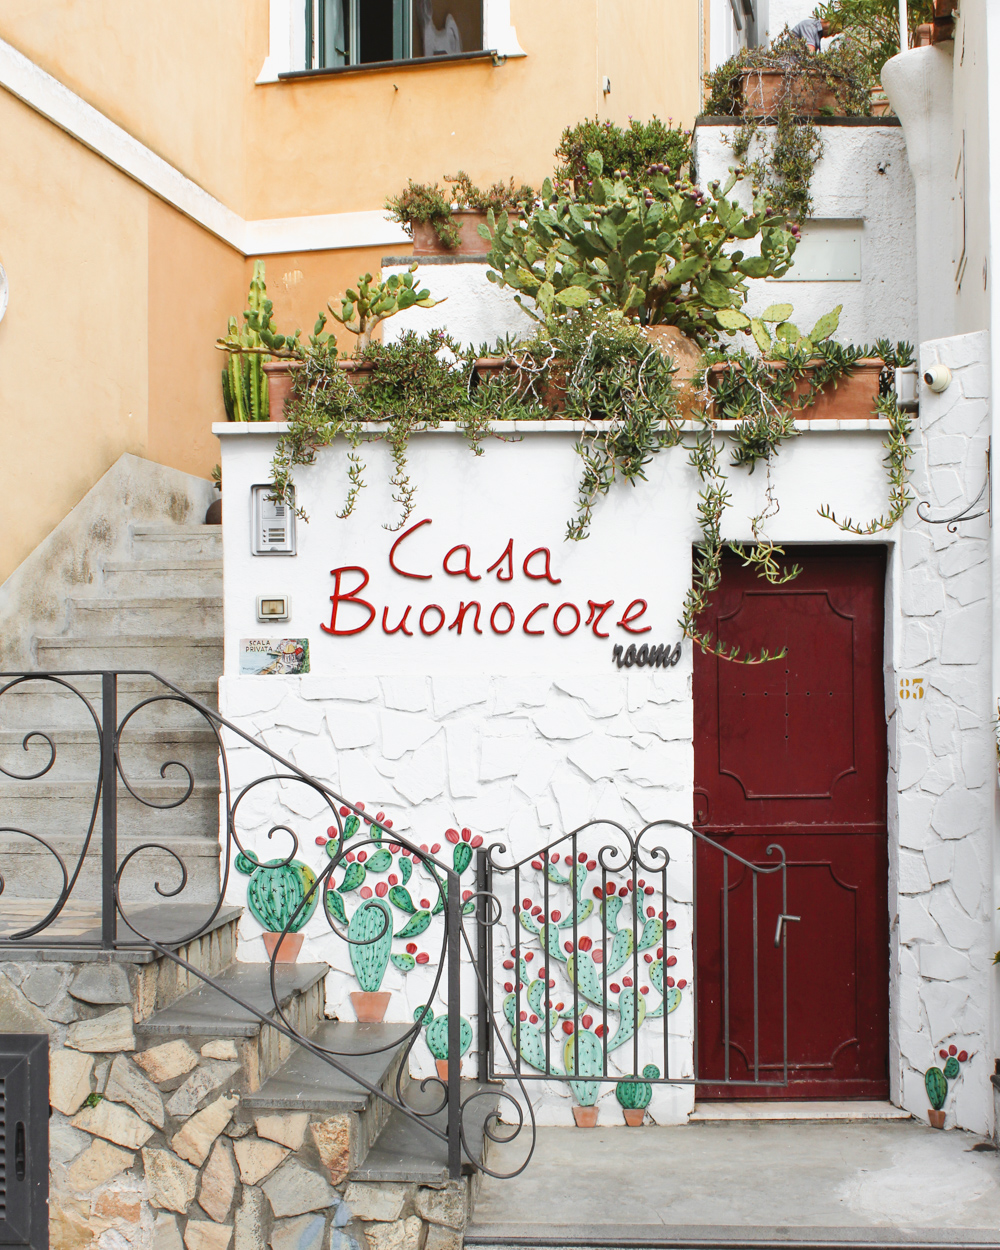 Positano Travel Guide. Casa Buoncore